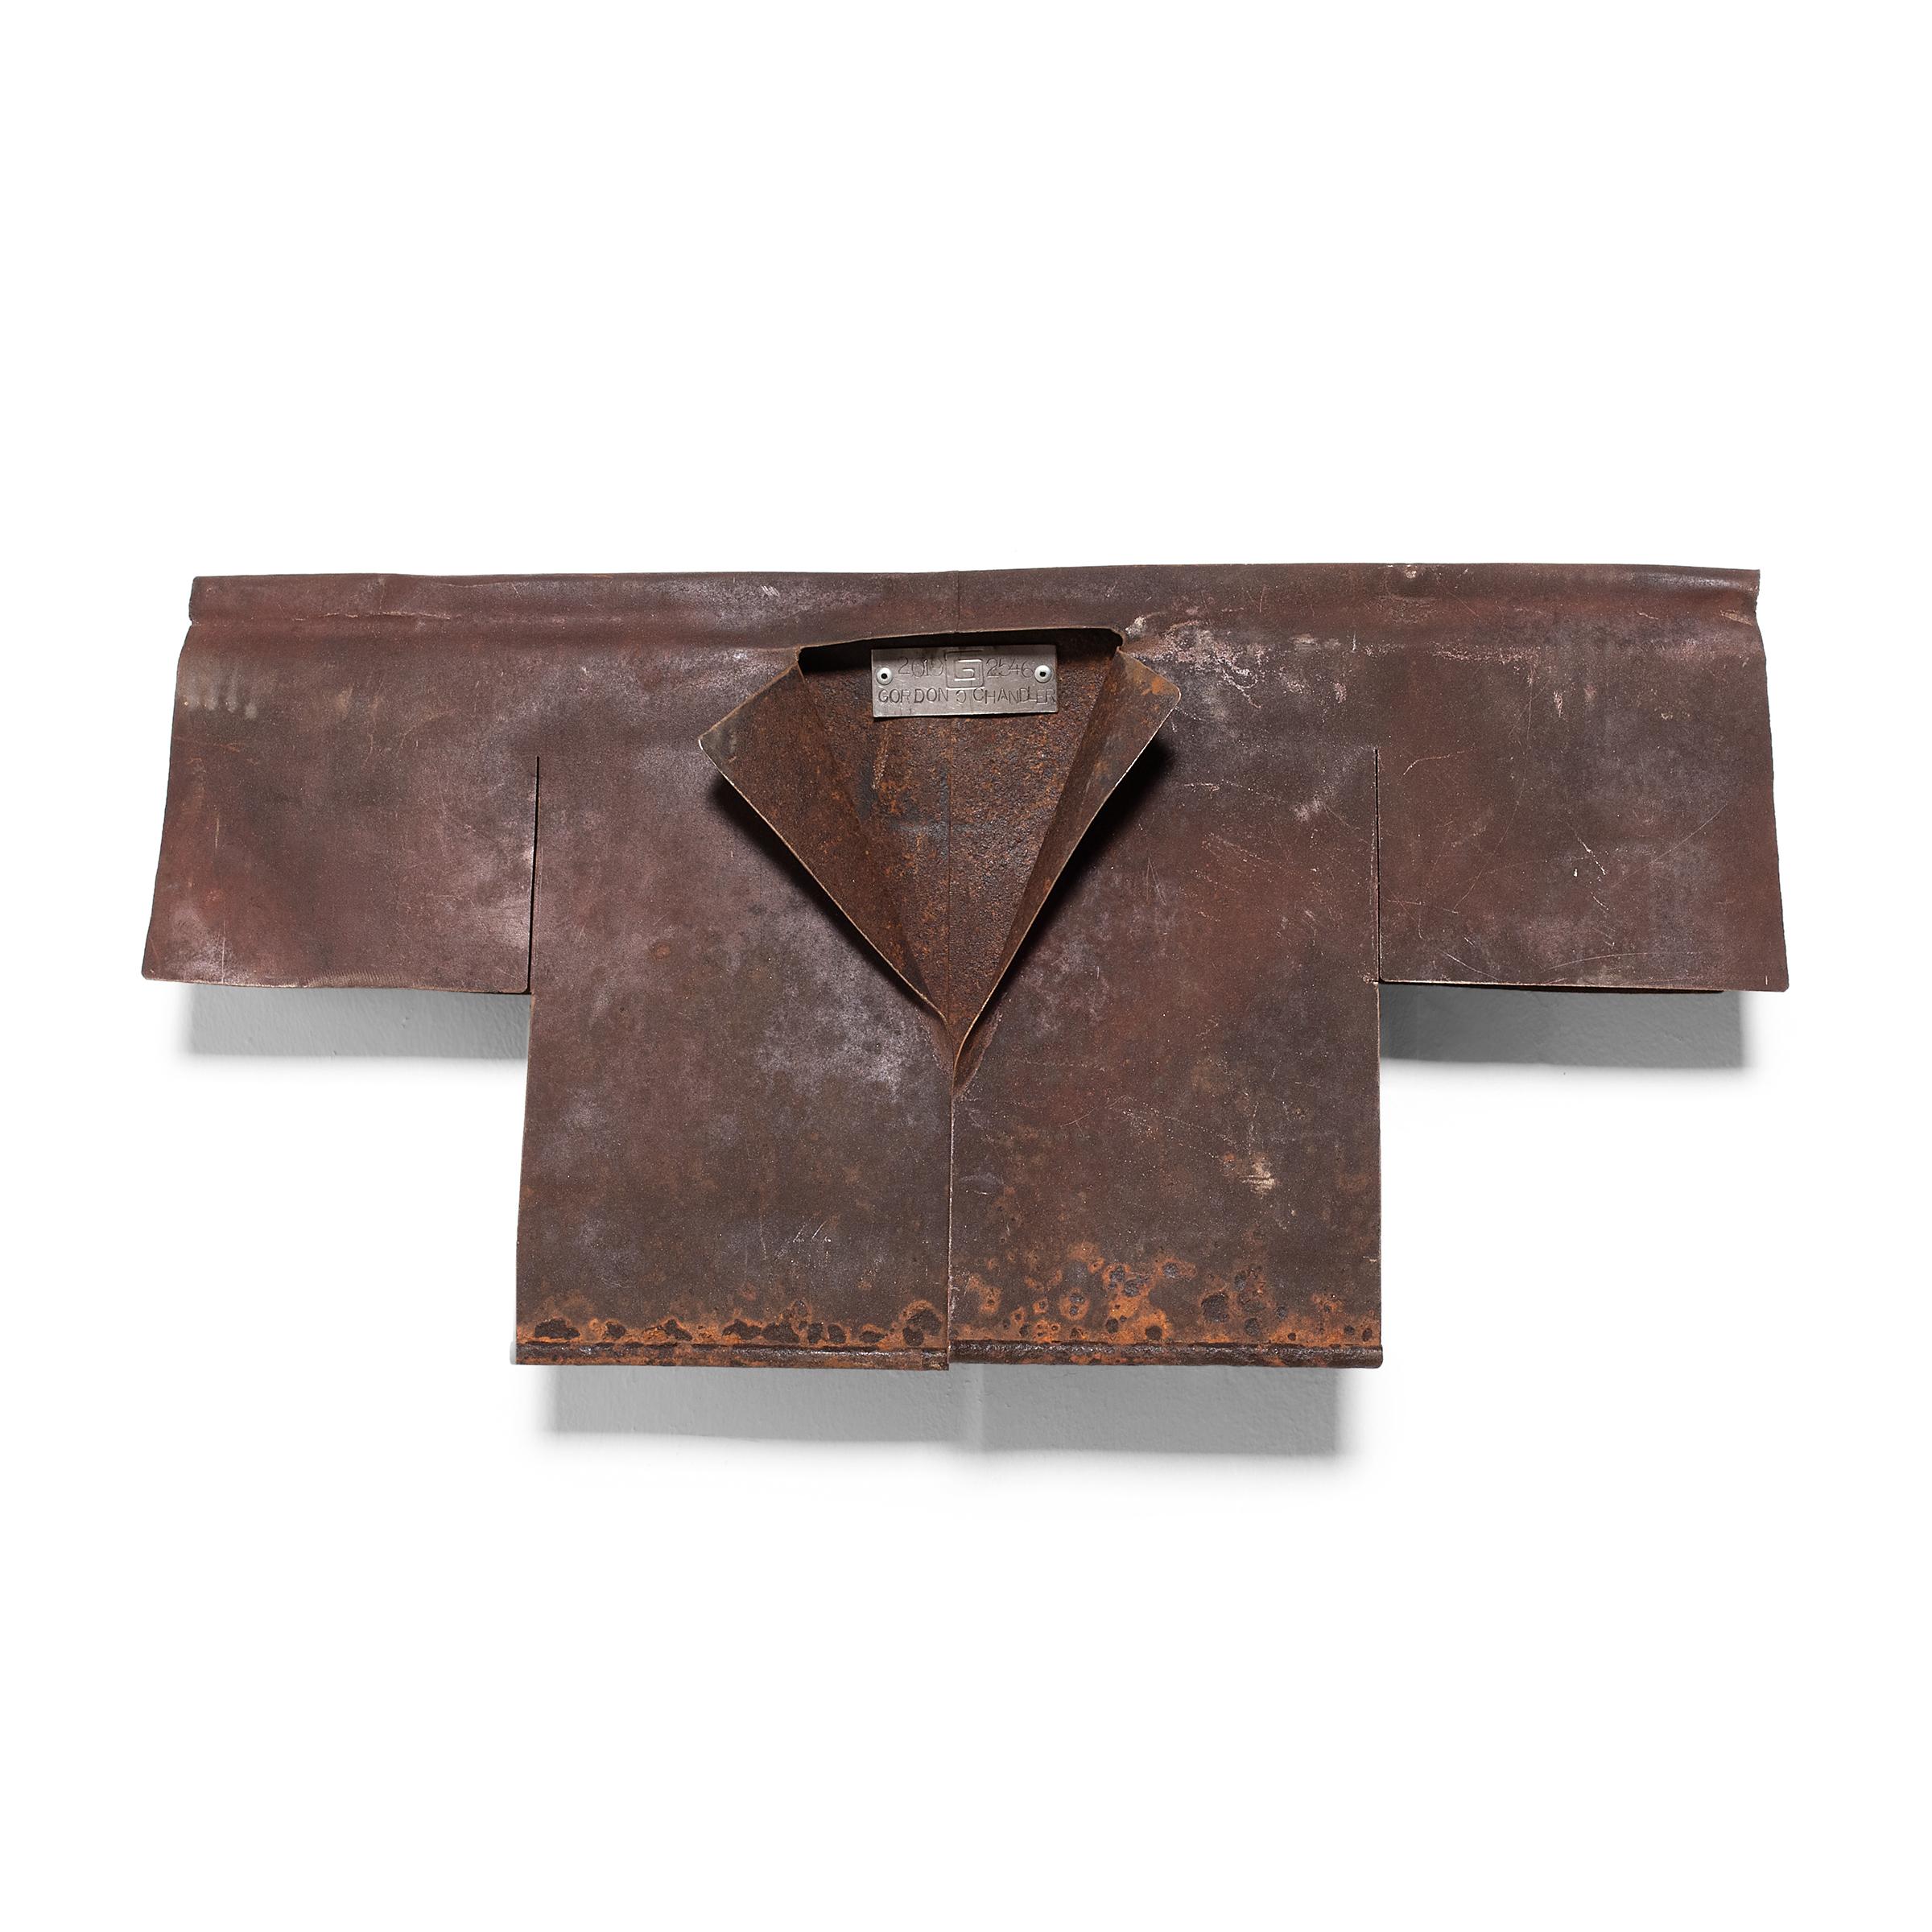 Gordon Chandler Abstract Sculpture - Rust Jacket